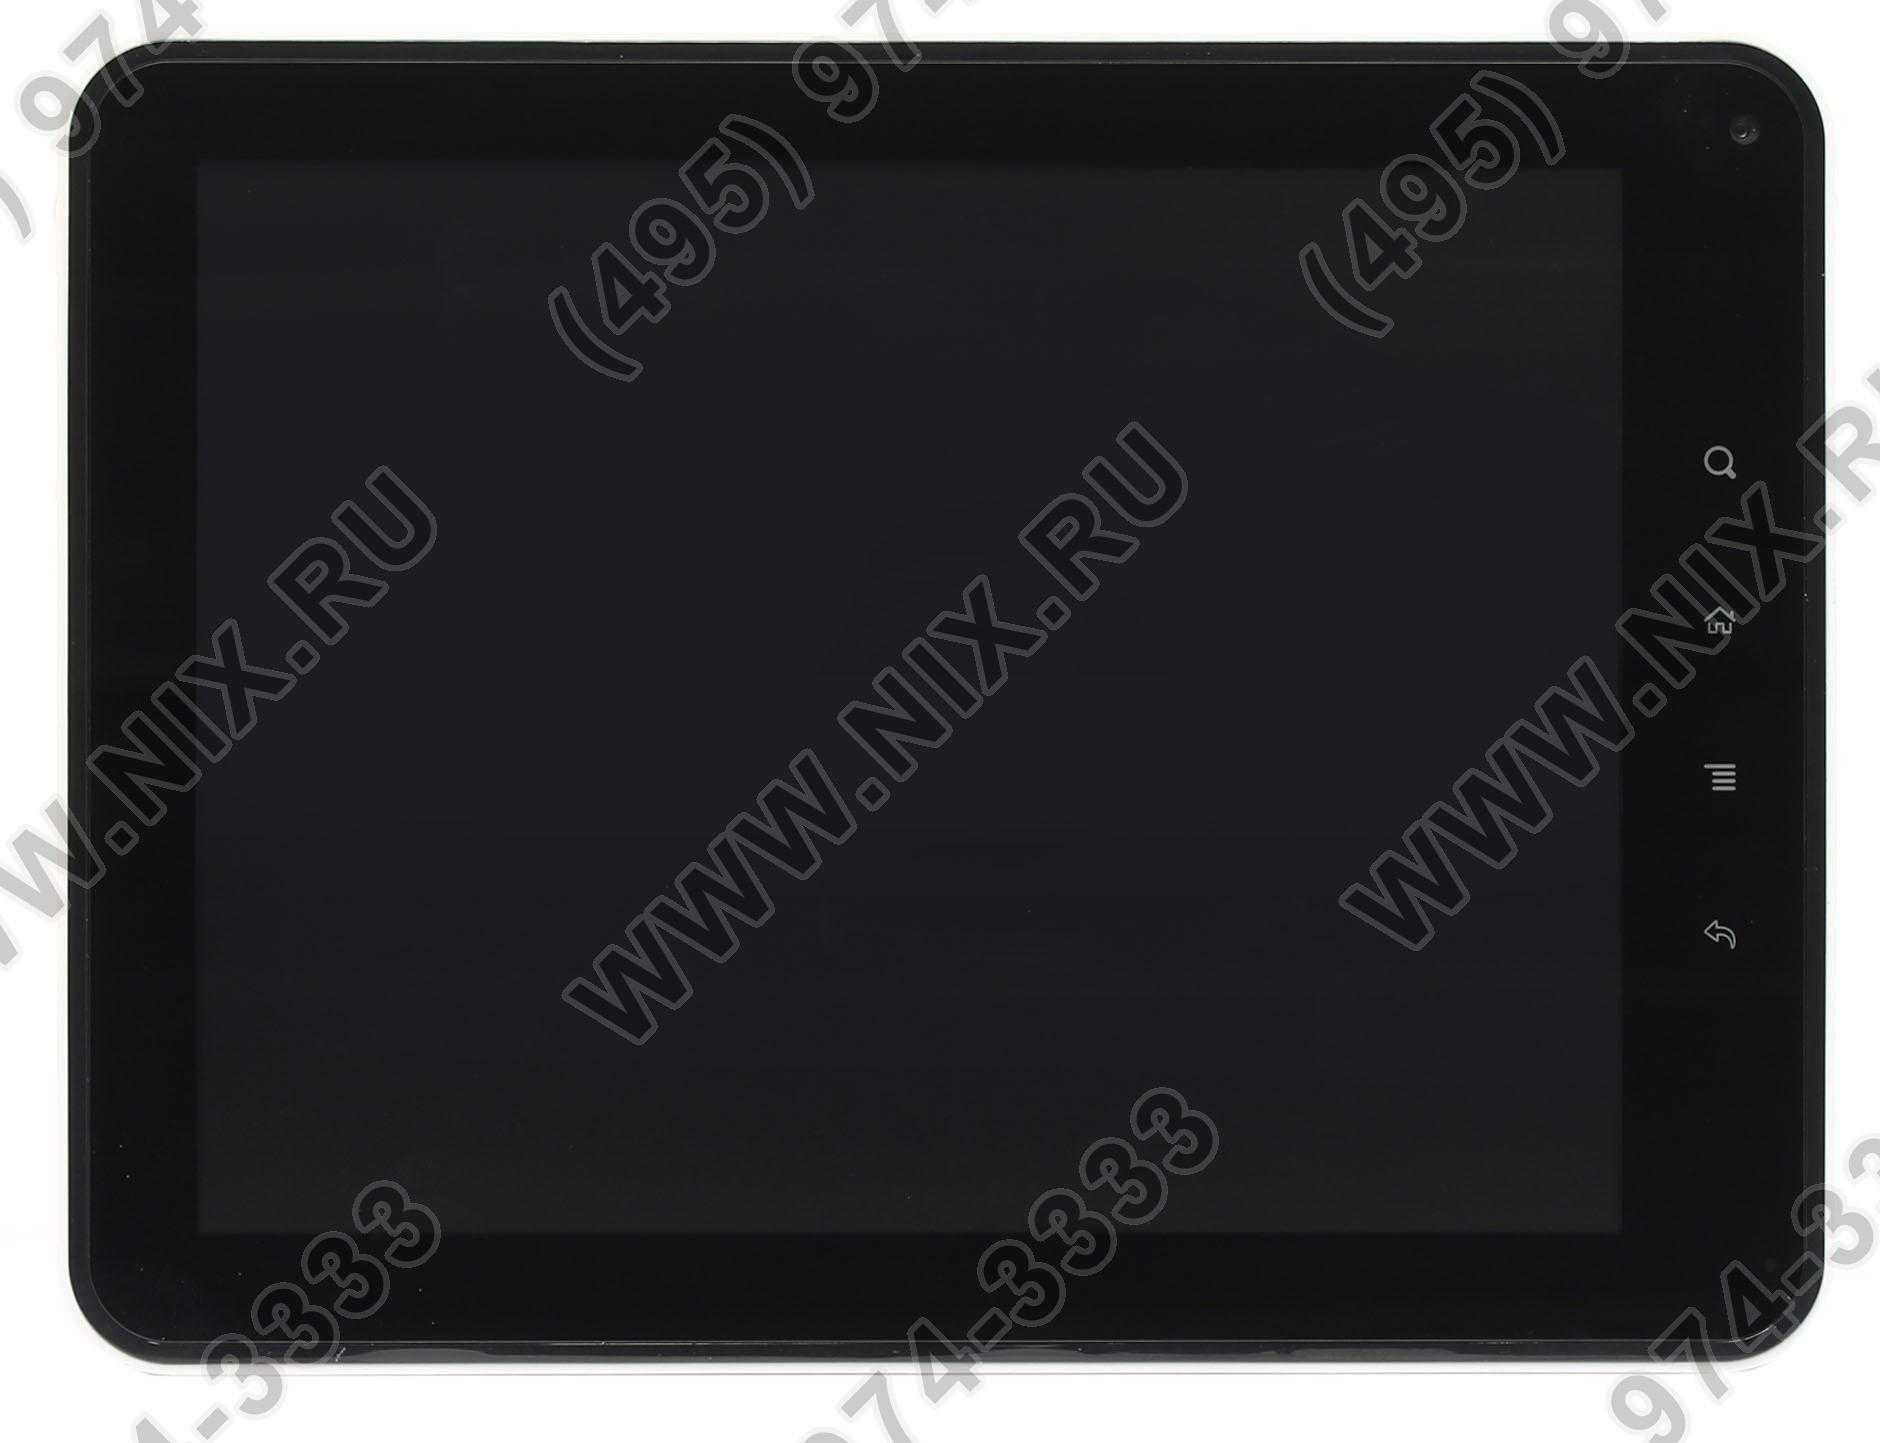 Bliss pad r7014 - купить , скидки, цена, отзывы, обзор, характеристики - планшеты